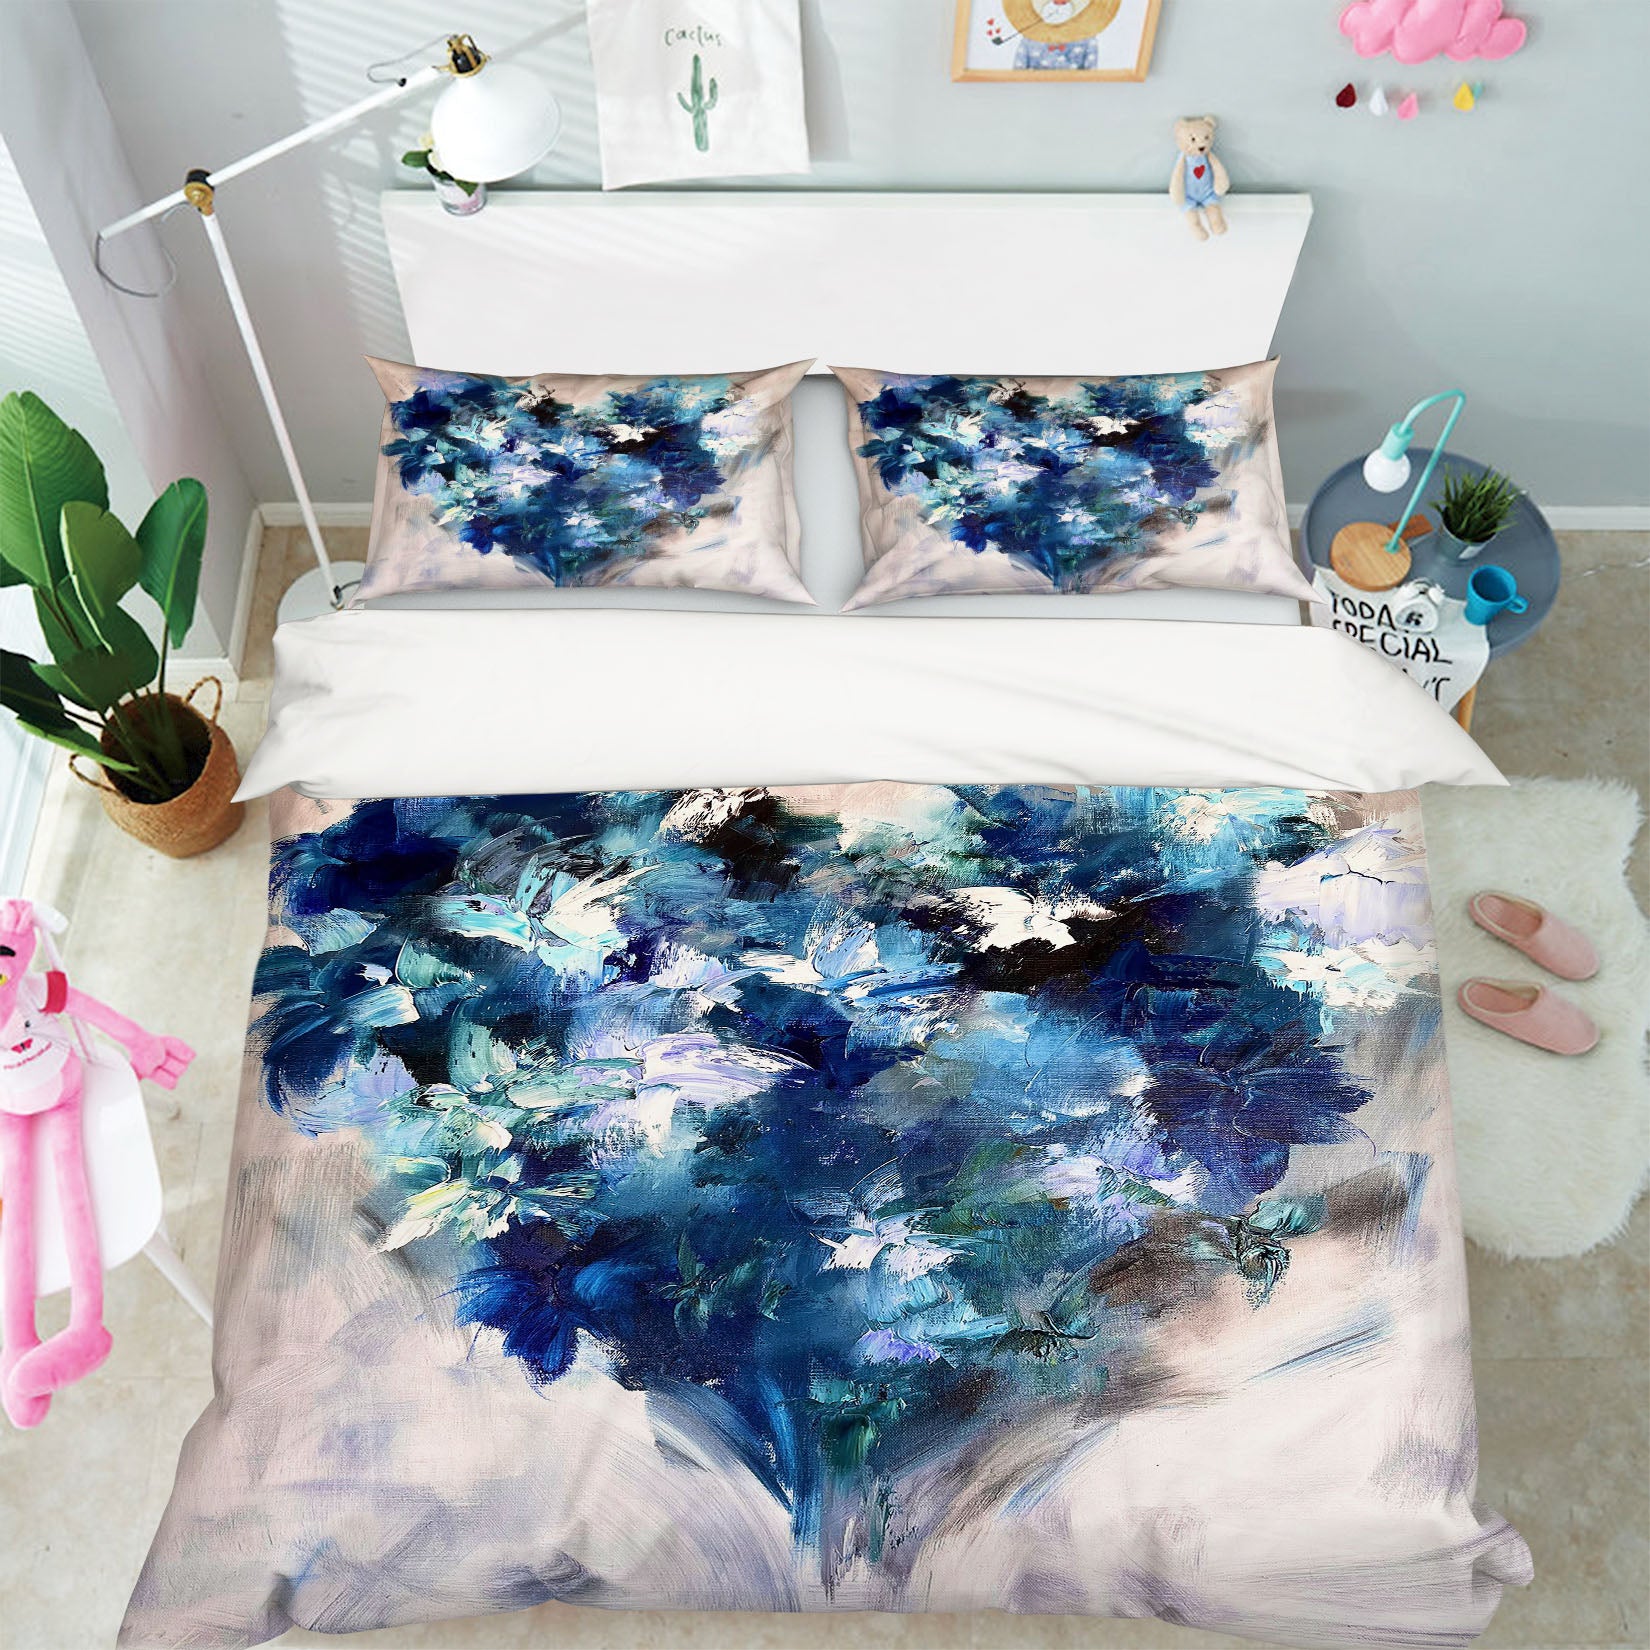 3D Blue Graffiti 3800 Skromova Marina Bedding Bed Pillowcases Quilt Cover Duvet Cover